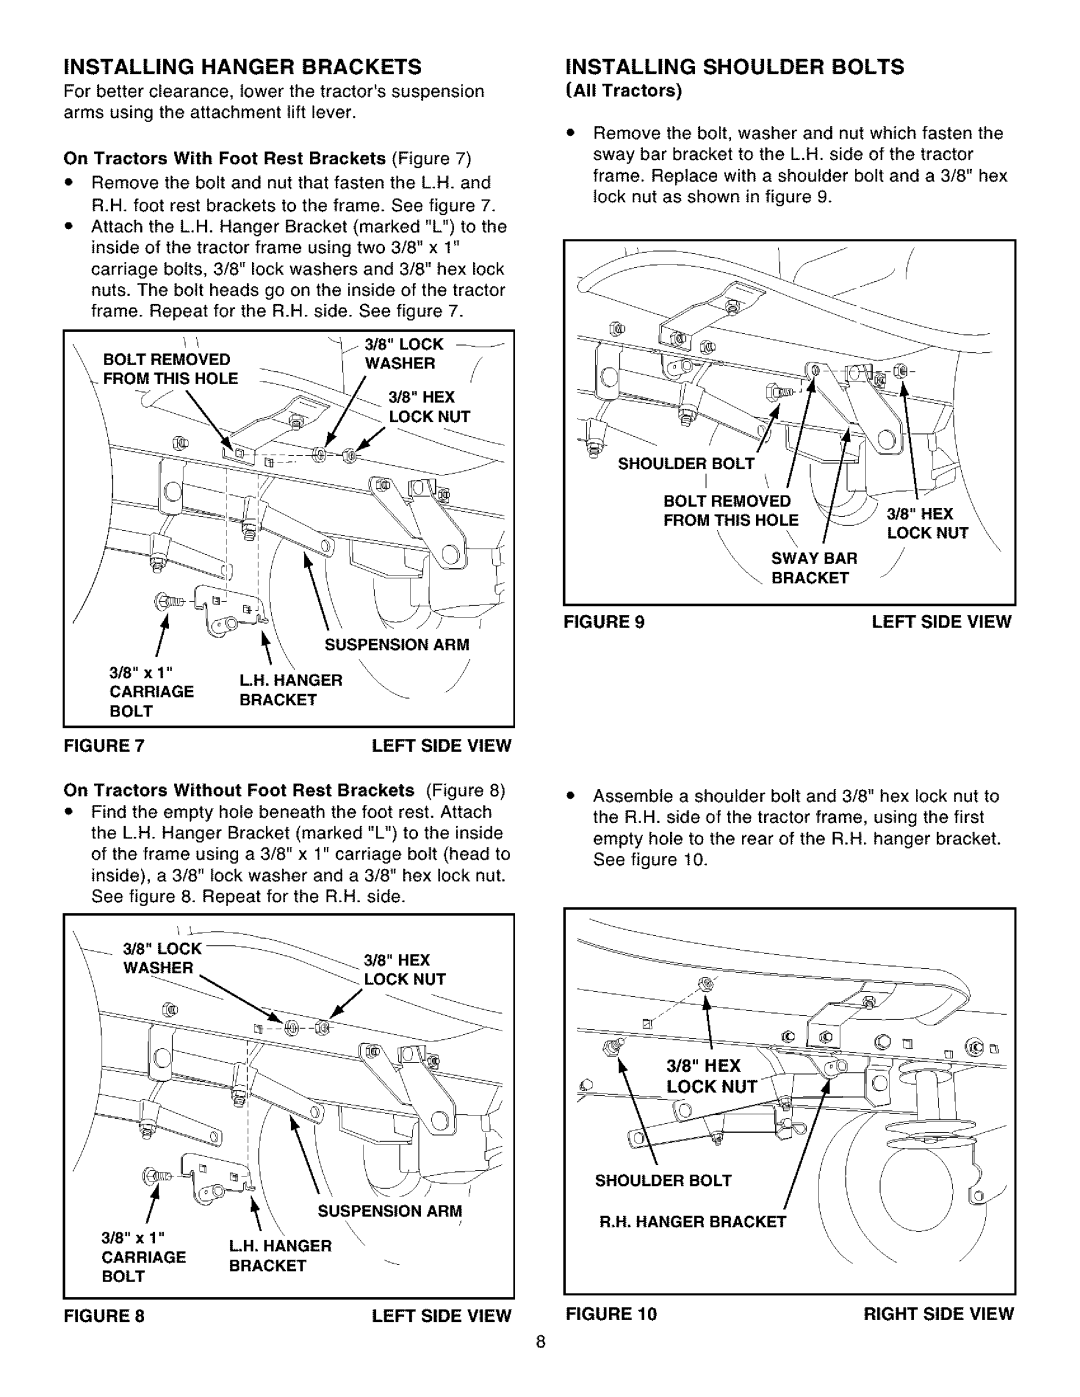 Craftsman 486.248531 owner manual Installing Shoulder Bolts 